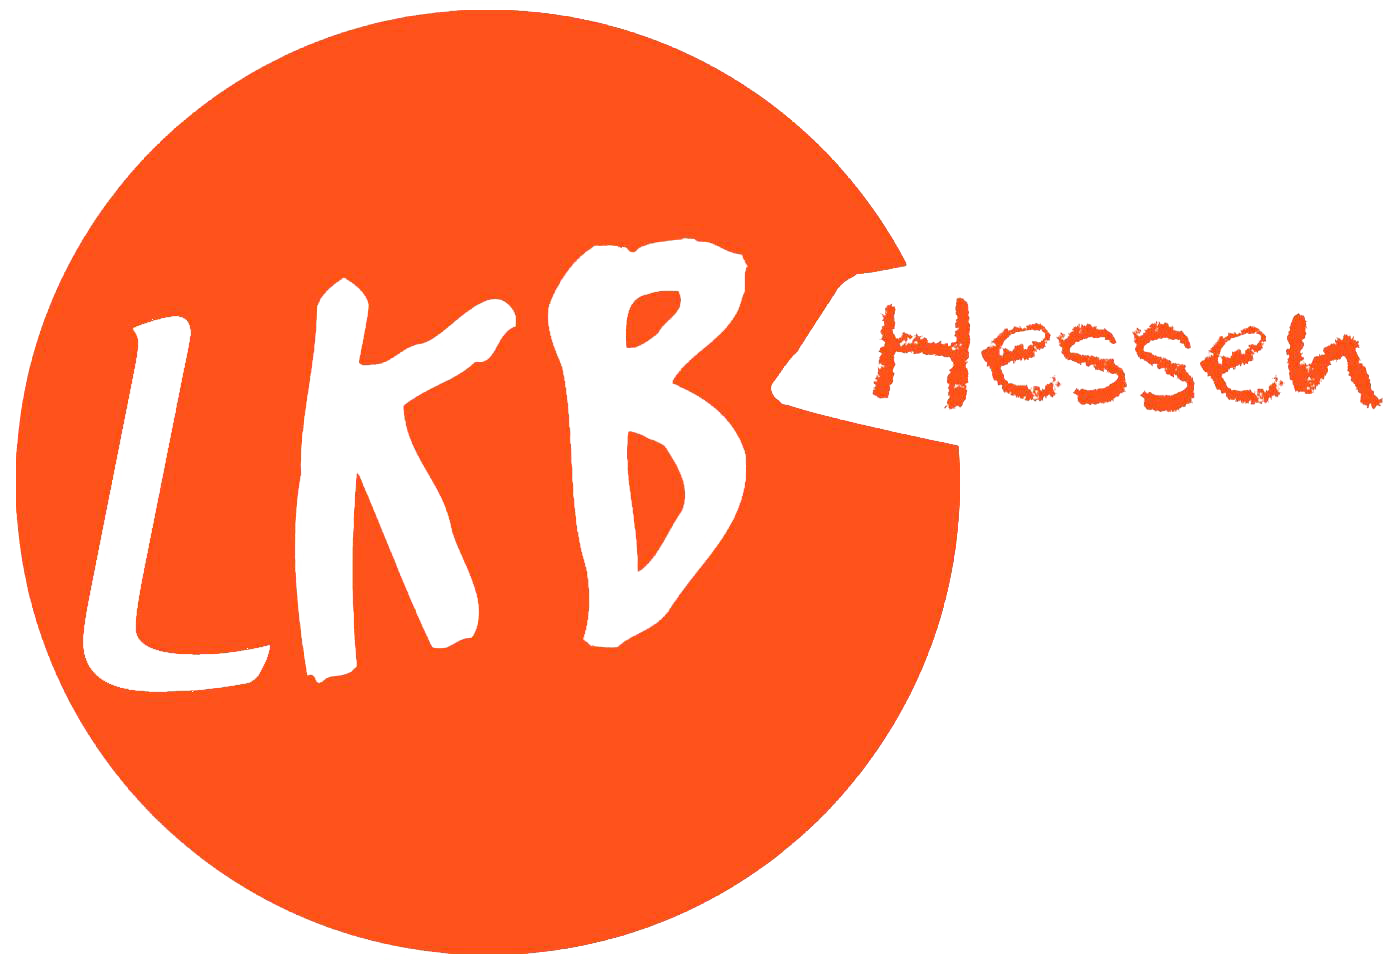 logo_lkb